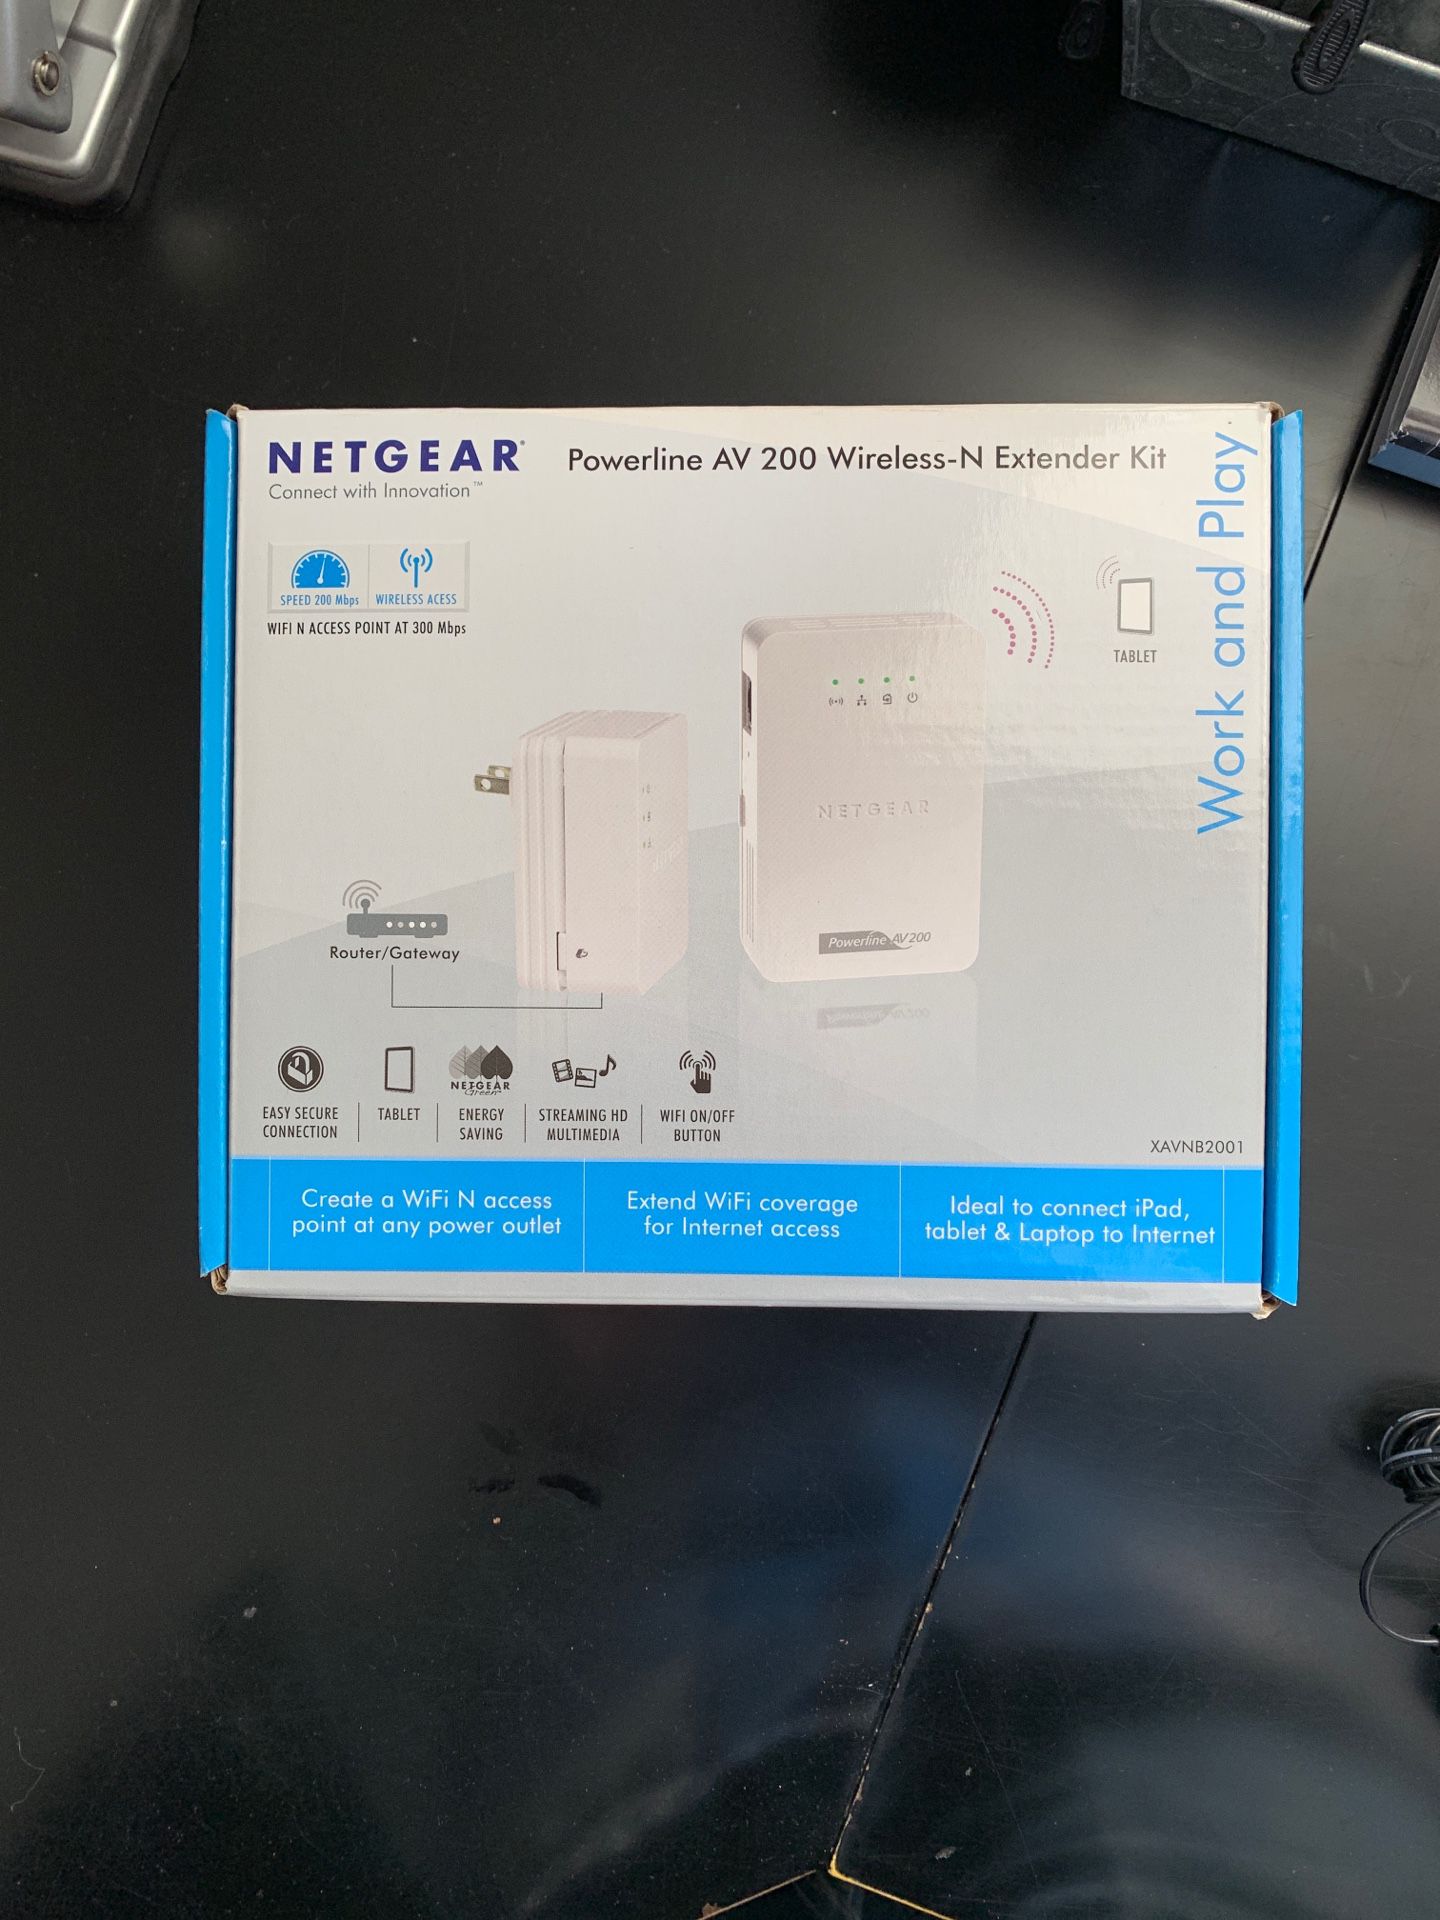 Netgear Powerline AV 200 wireless-N Extender kit